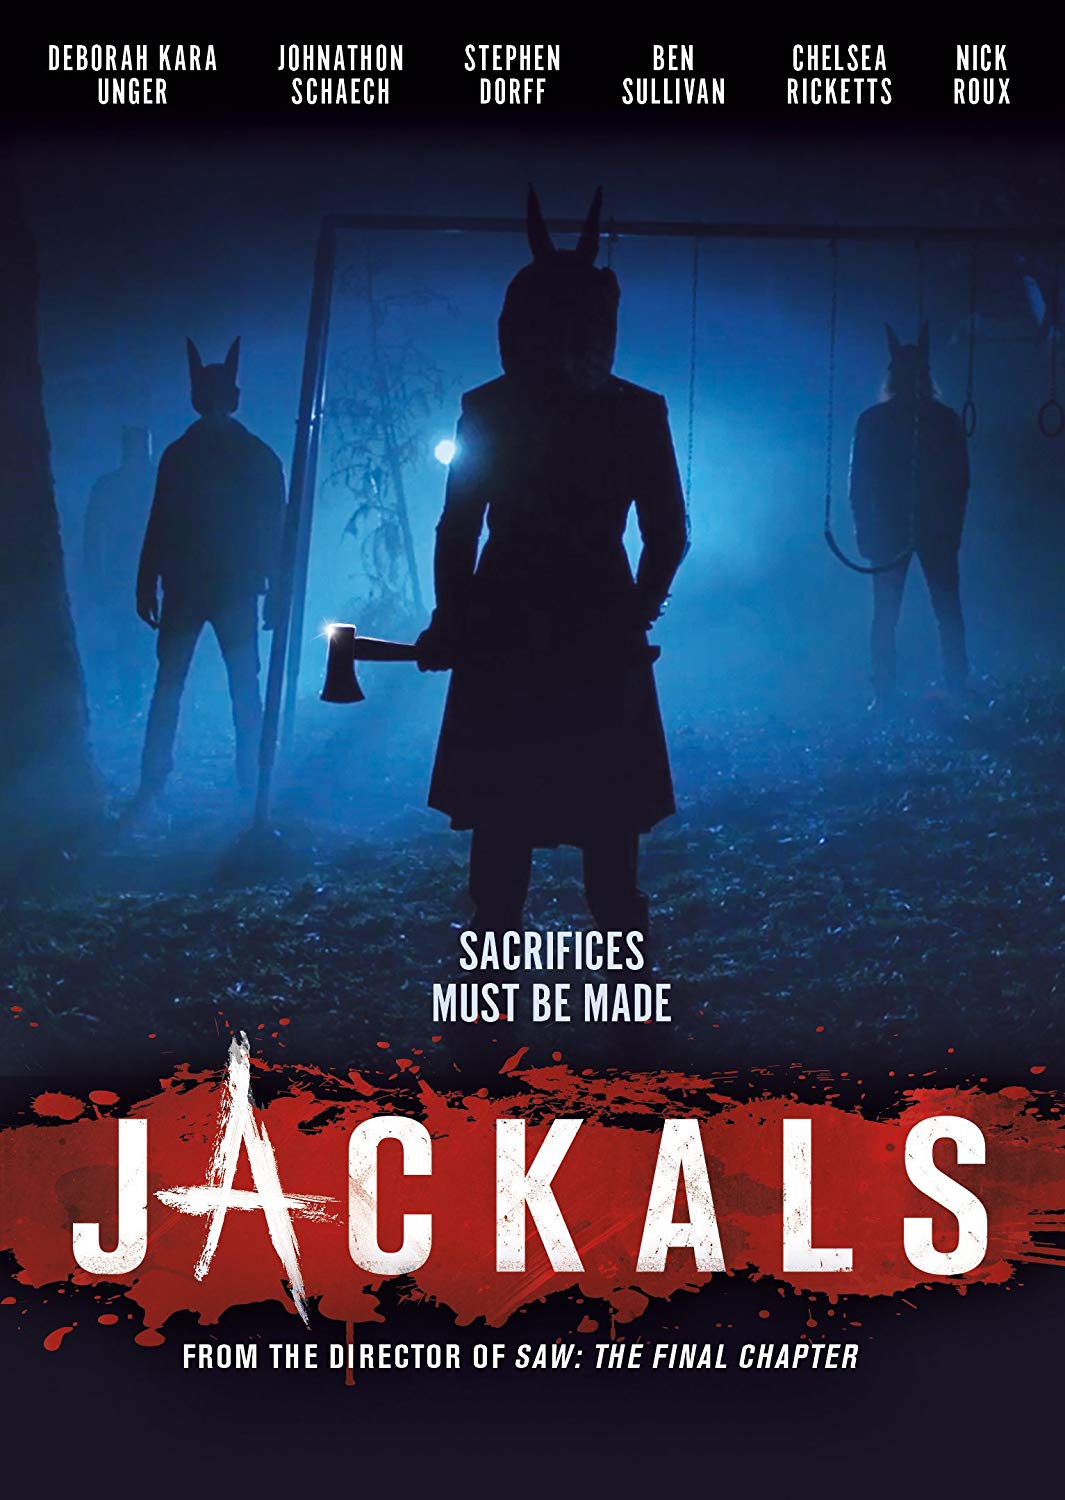 Jackals DVD